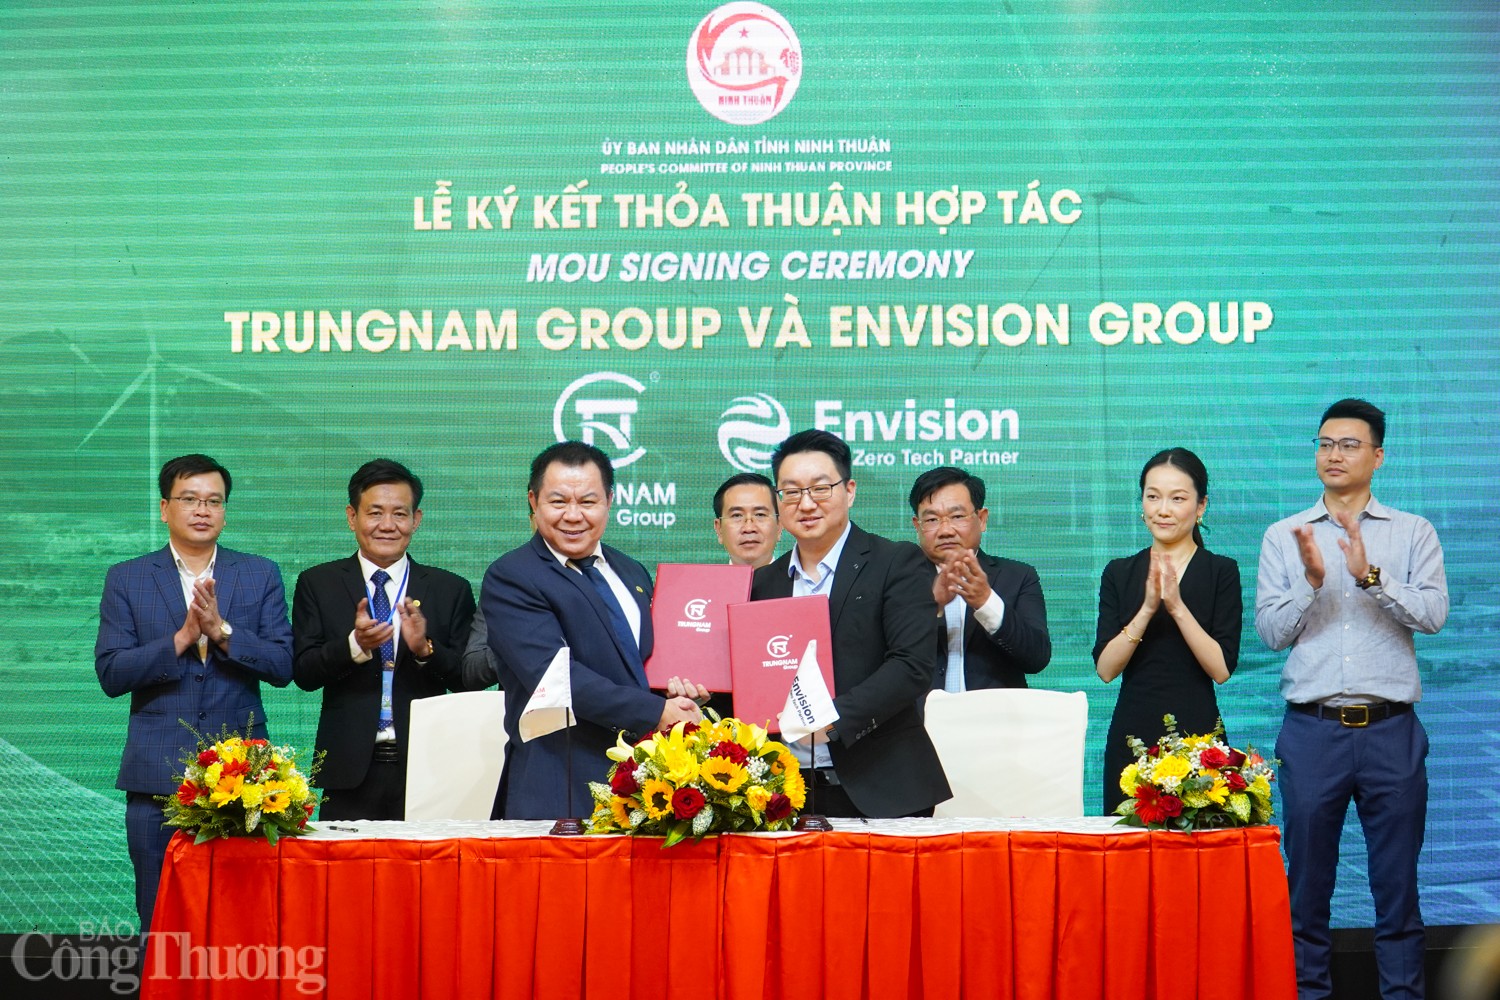 Hội thảo cũng chứng kiến phần lễ ký kết thoả thuận hợp tác giữa Trungnam Group và các đối tác. 